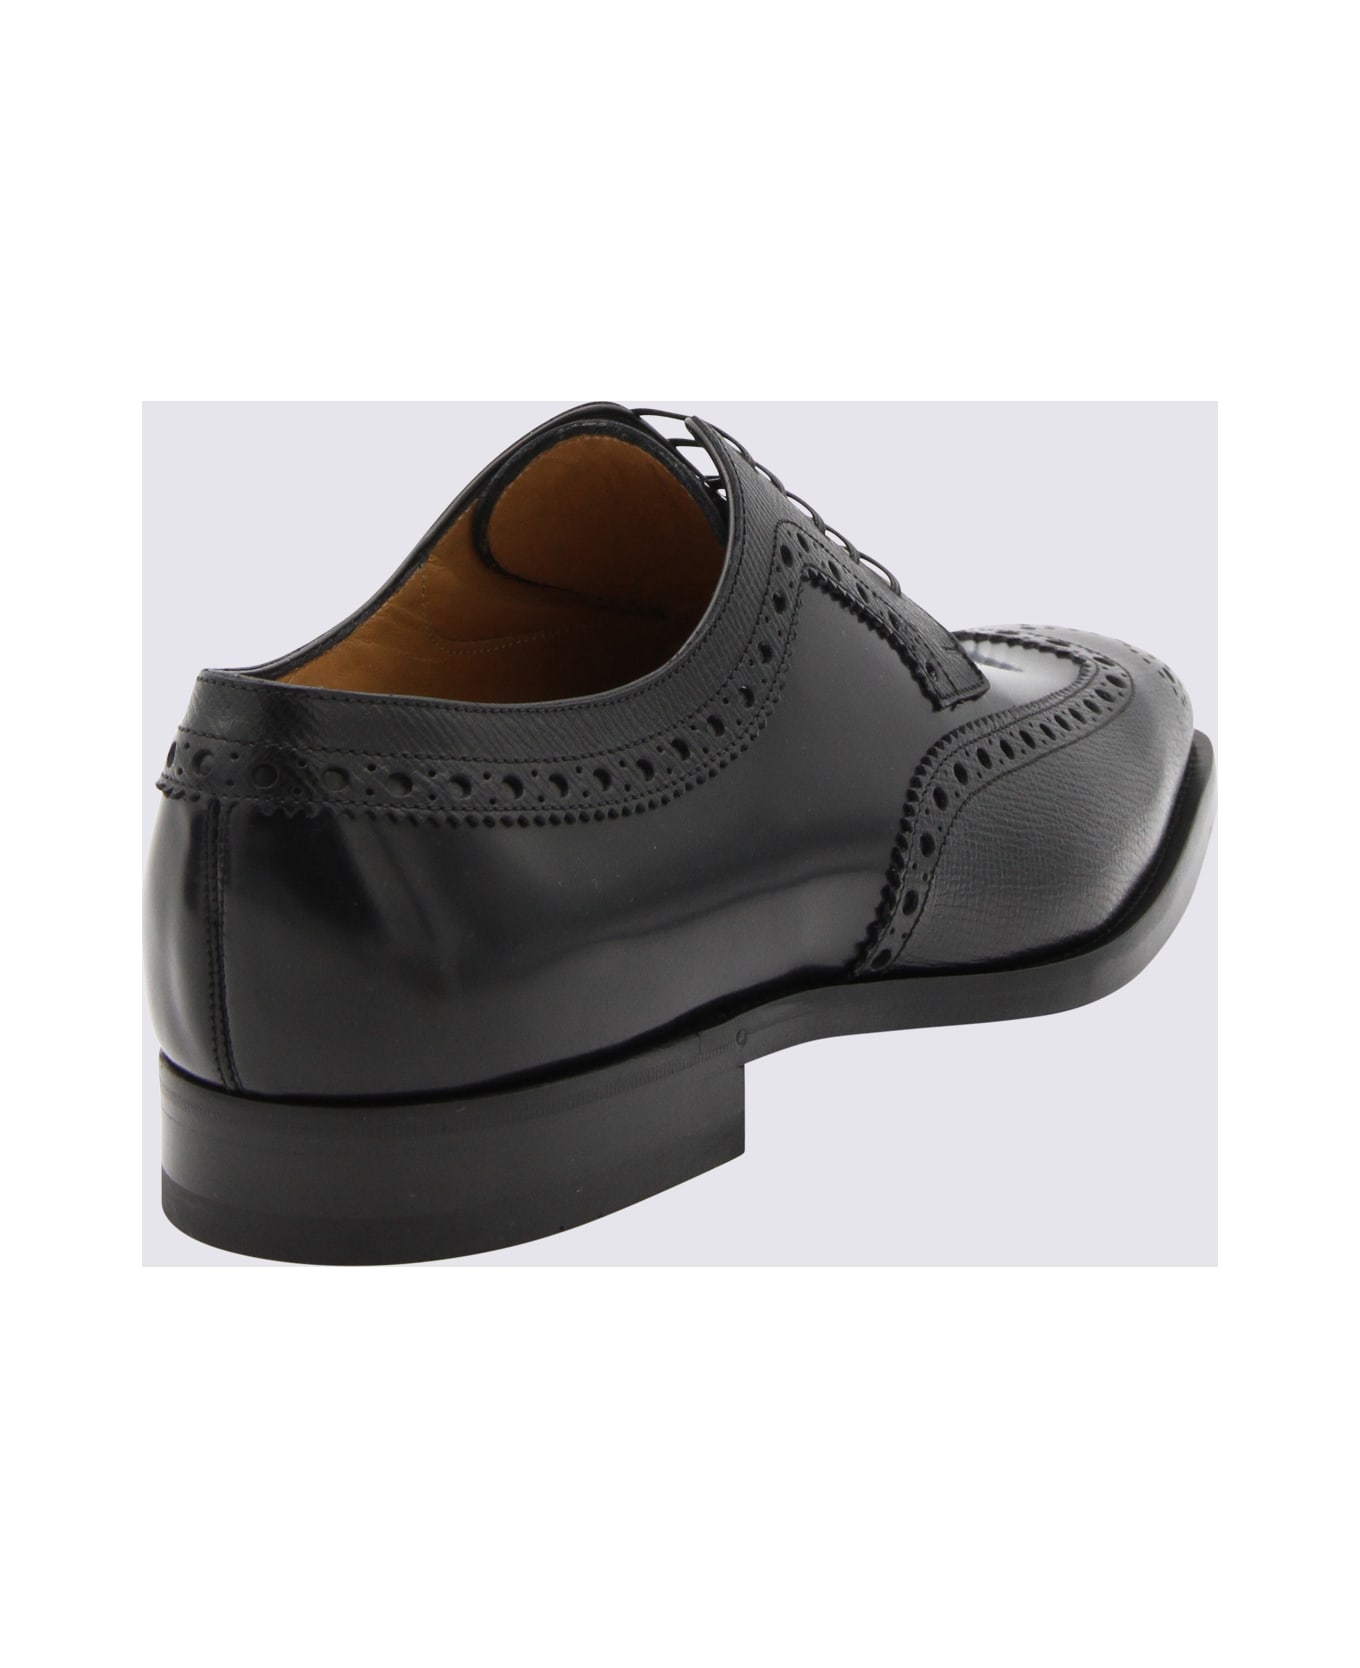 Ferragamo Black Leather Lace Up Shoes - Black